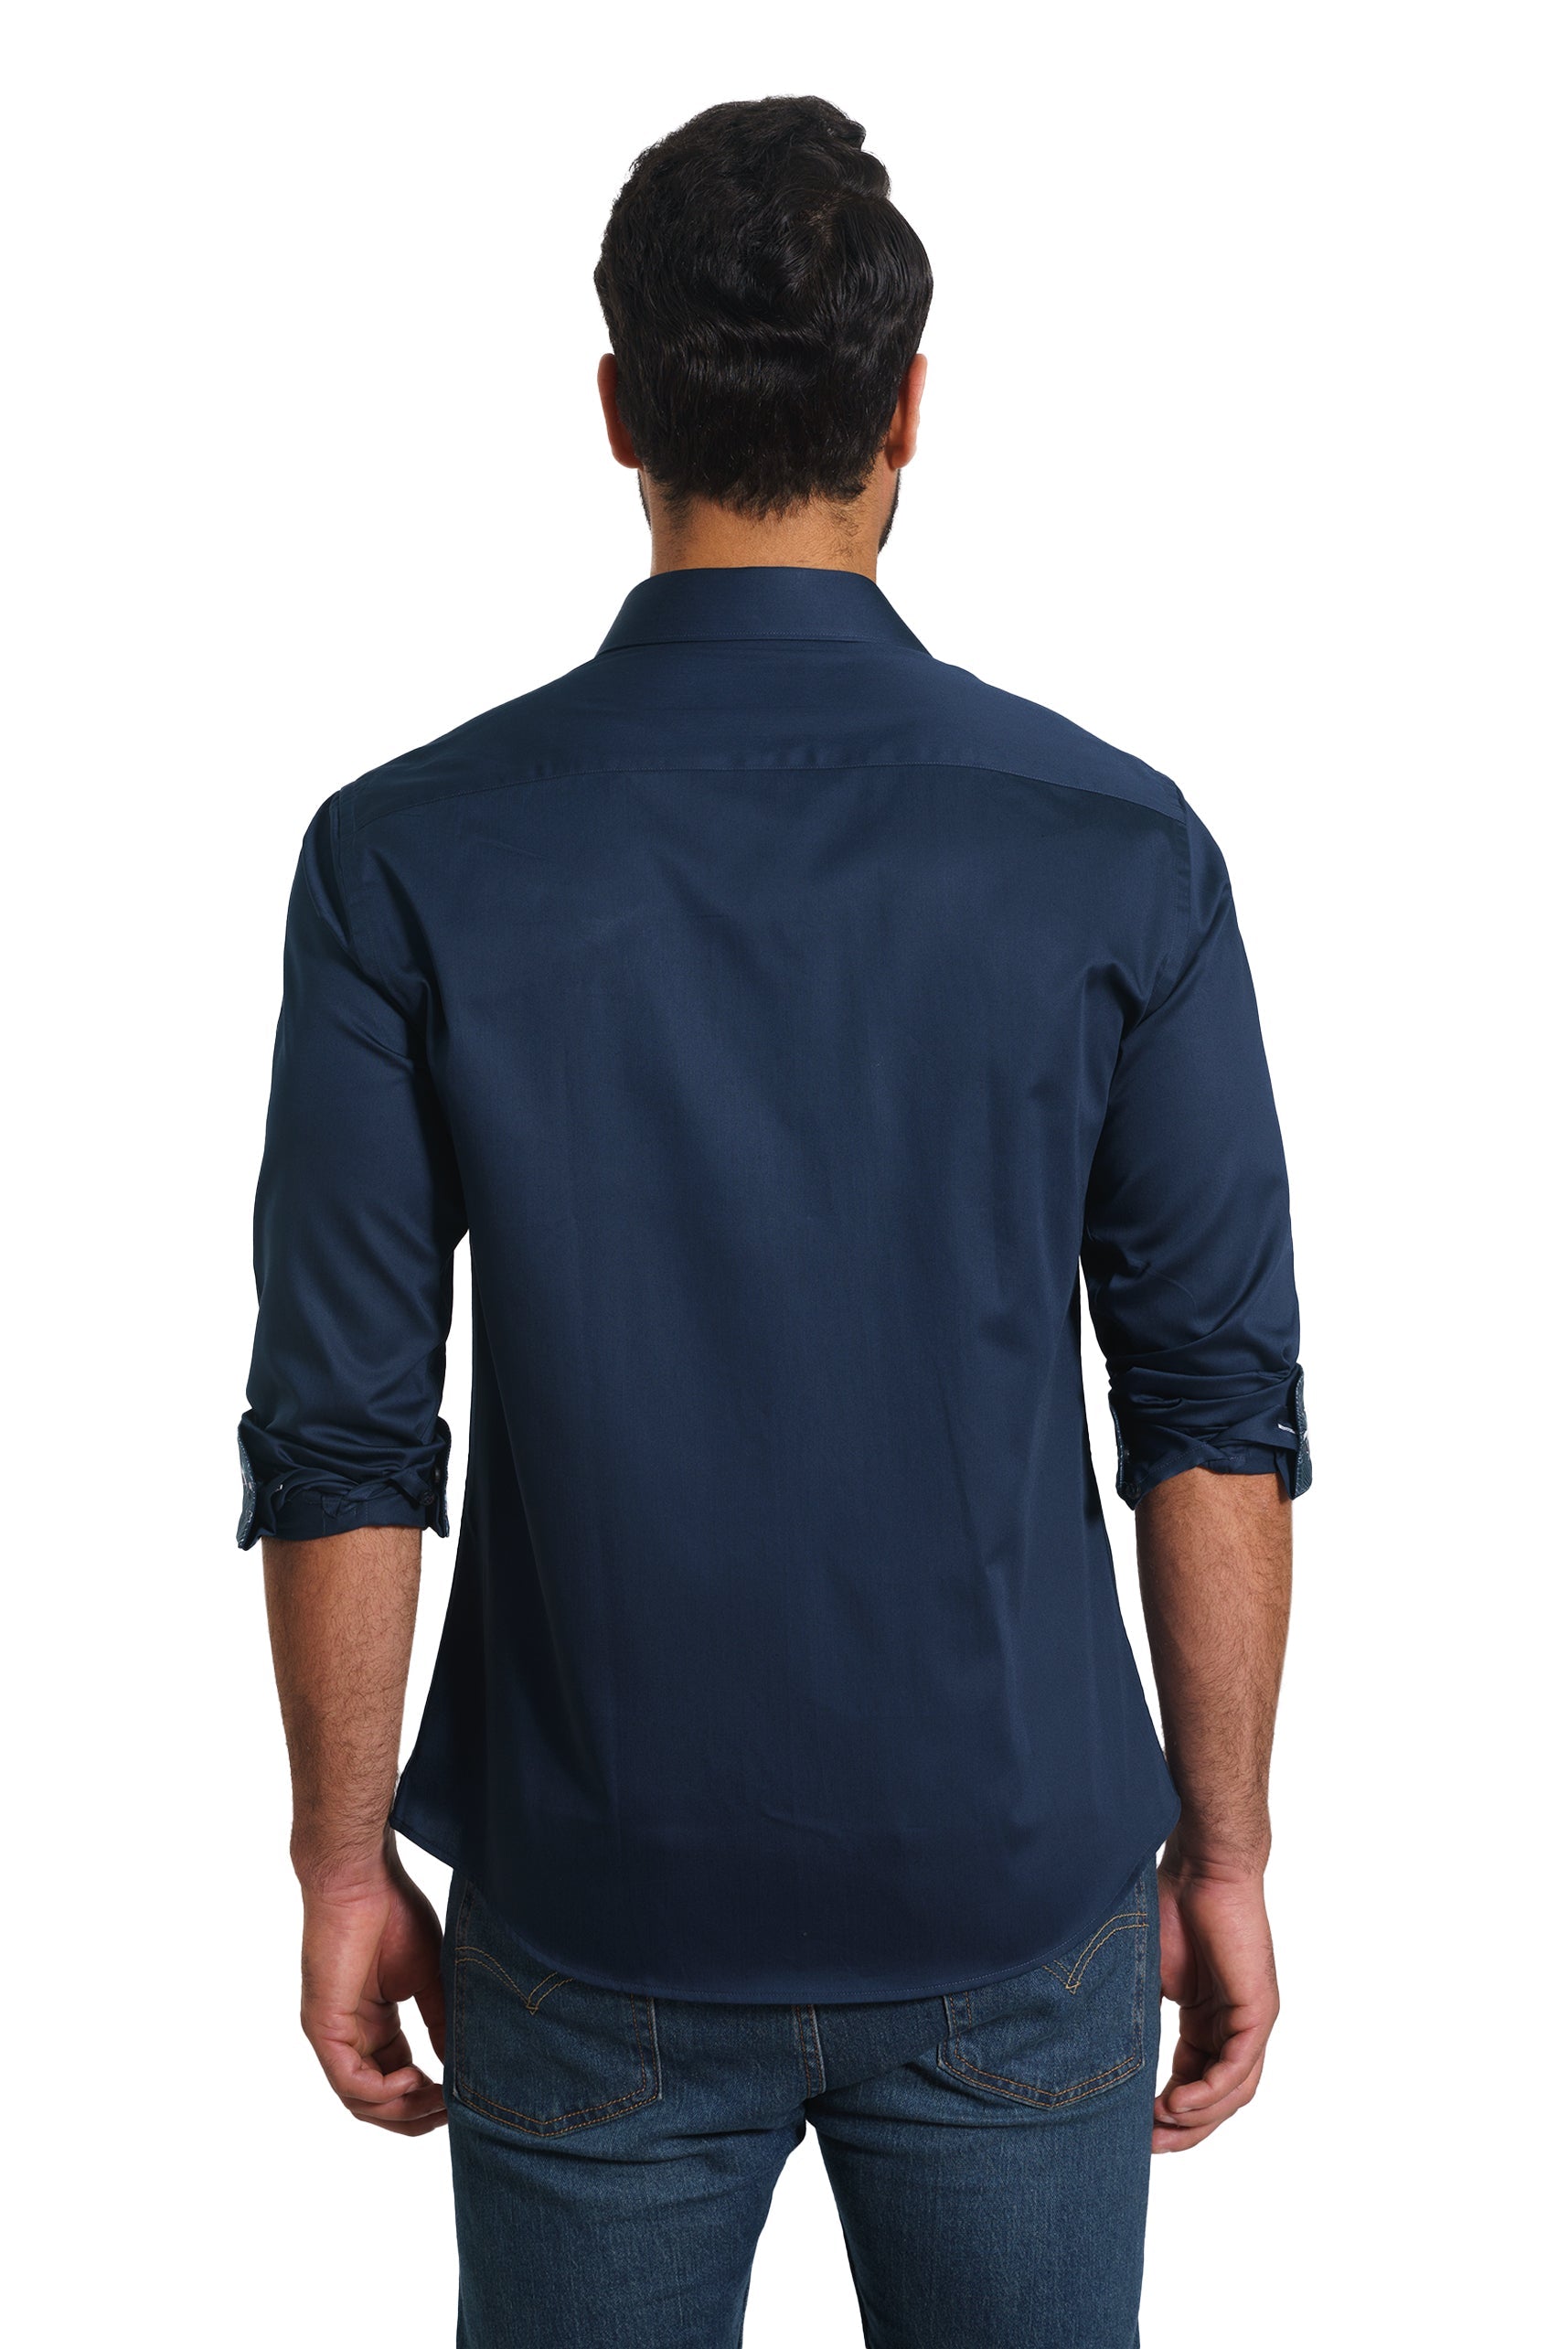 Navy Long Sleeve Shirt TH-2865 Back